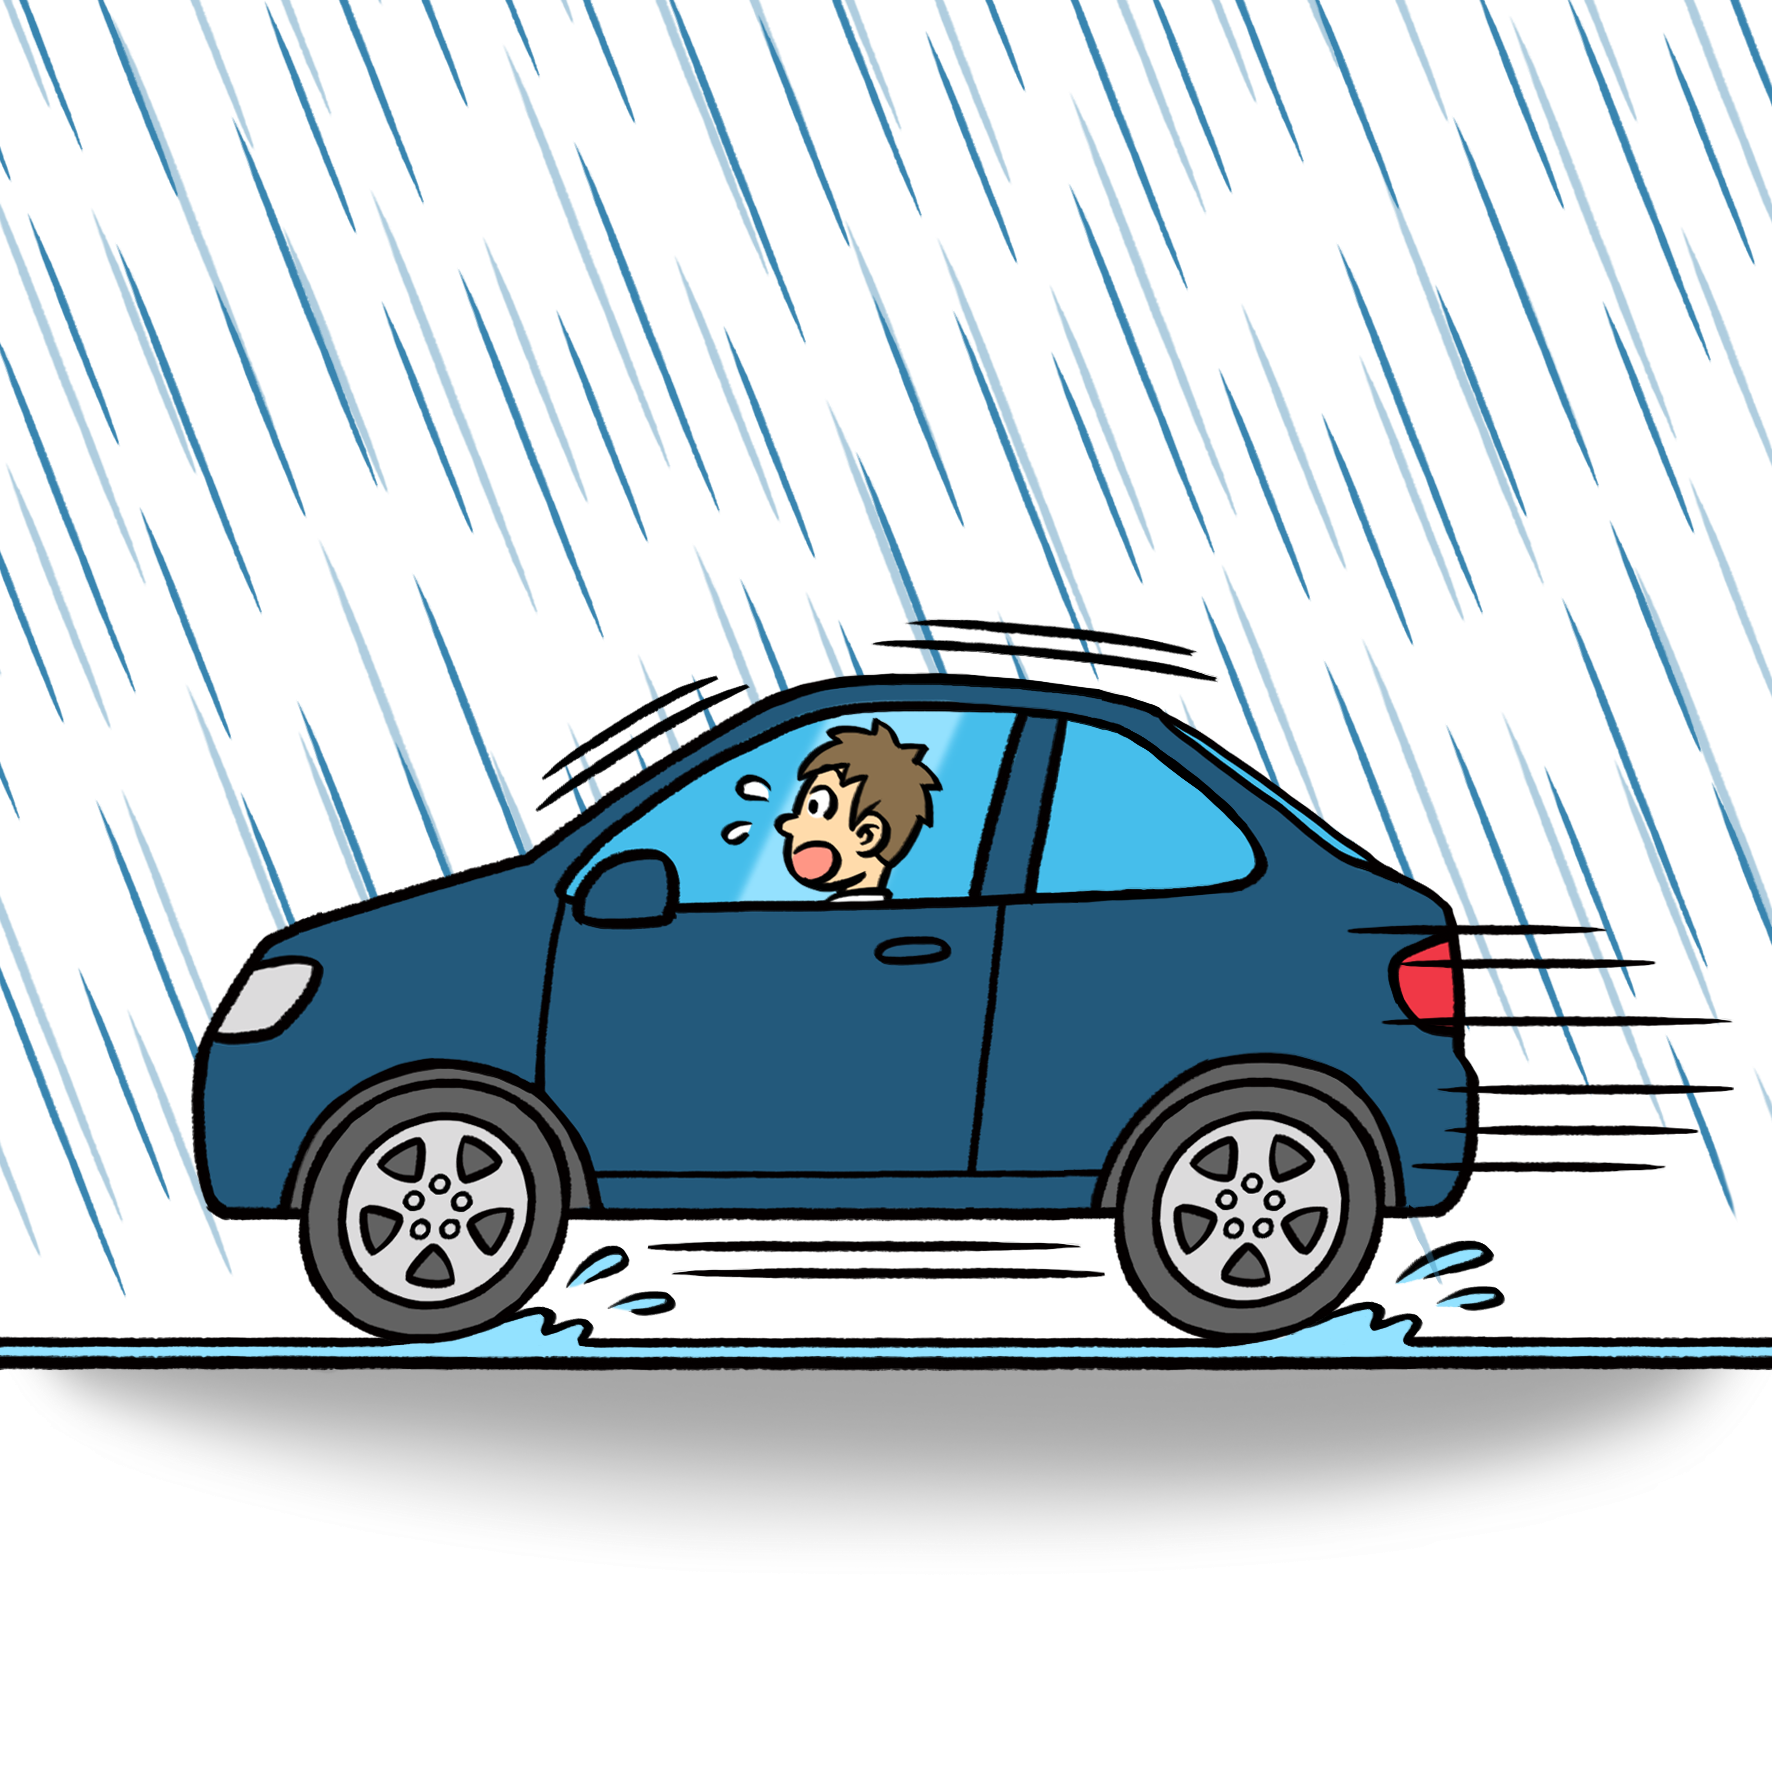 ミスタータイヤマン 運転中のゲリラ豪雨 正しい対処法とは 地区のお知らせ 栃木フォーラム ブリヂストンのタイヤ専門店 ミスタータイヤマン